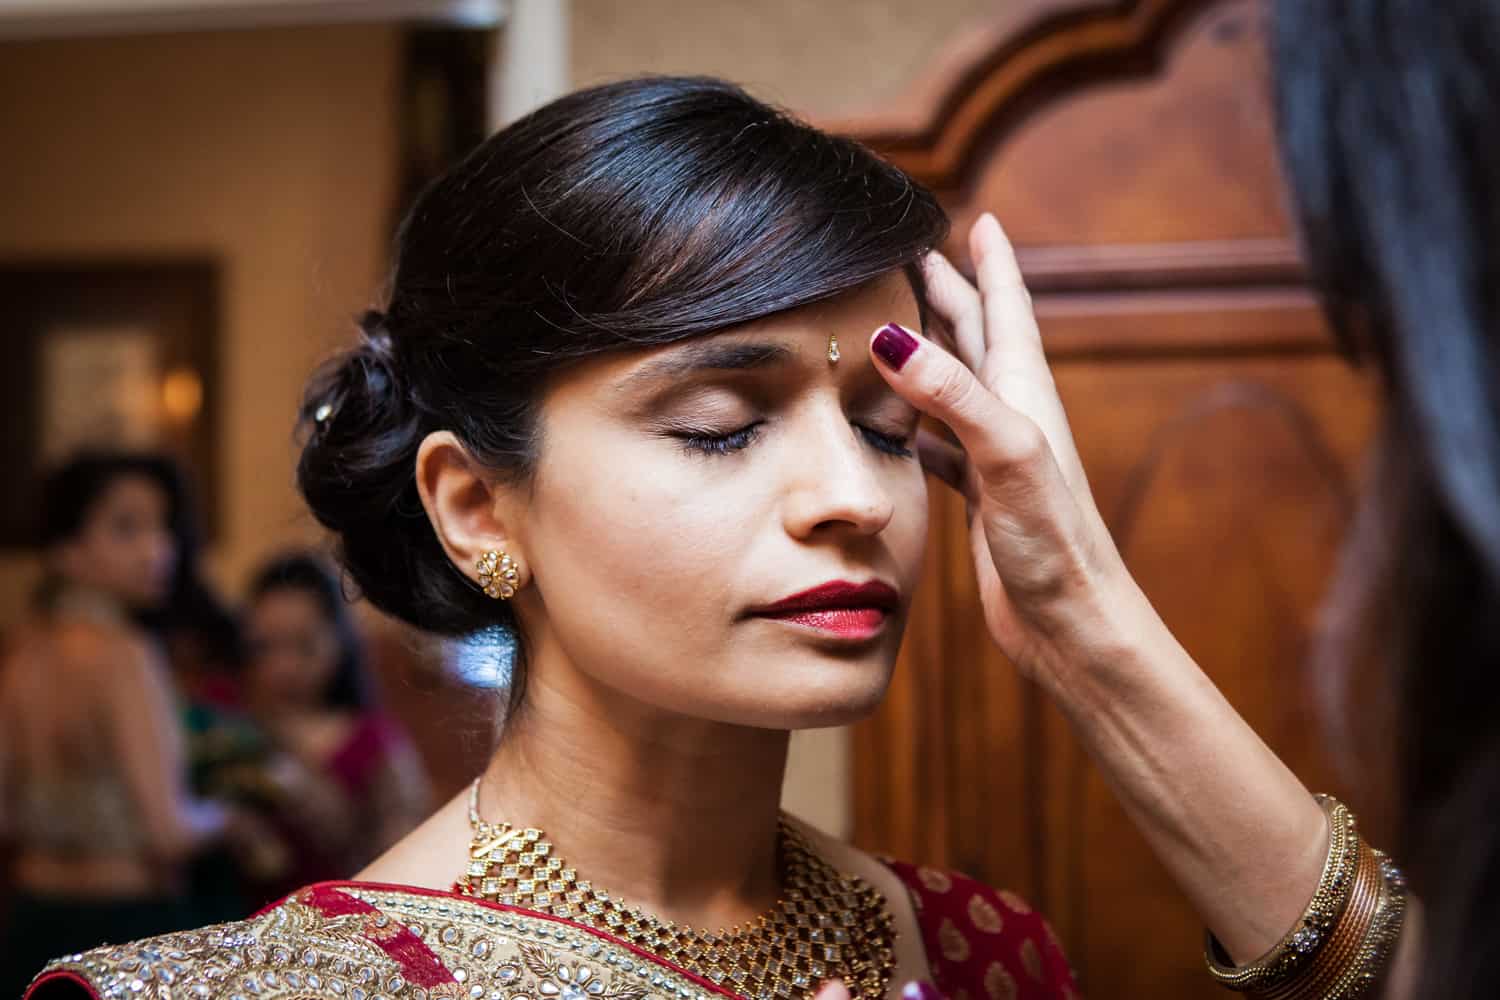 Hand applying bindi to bride